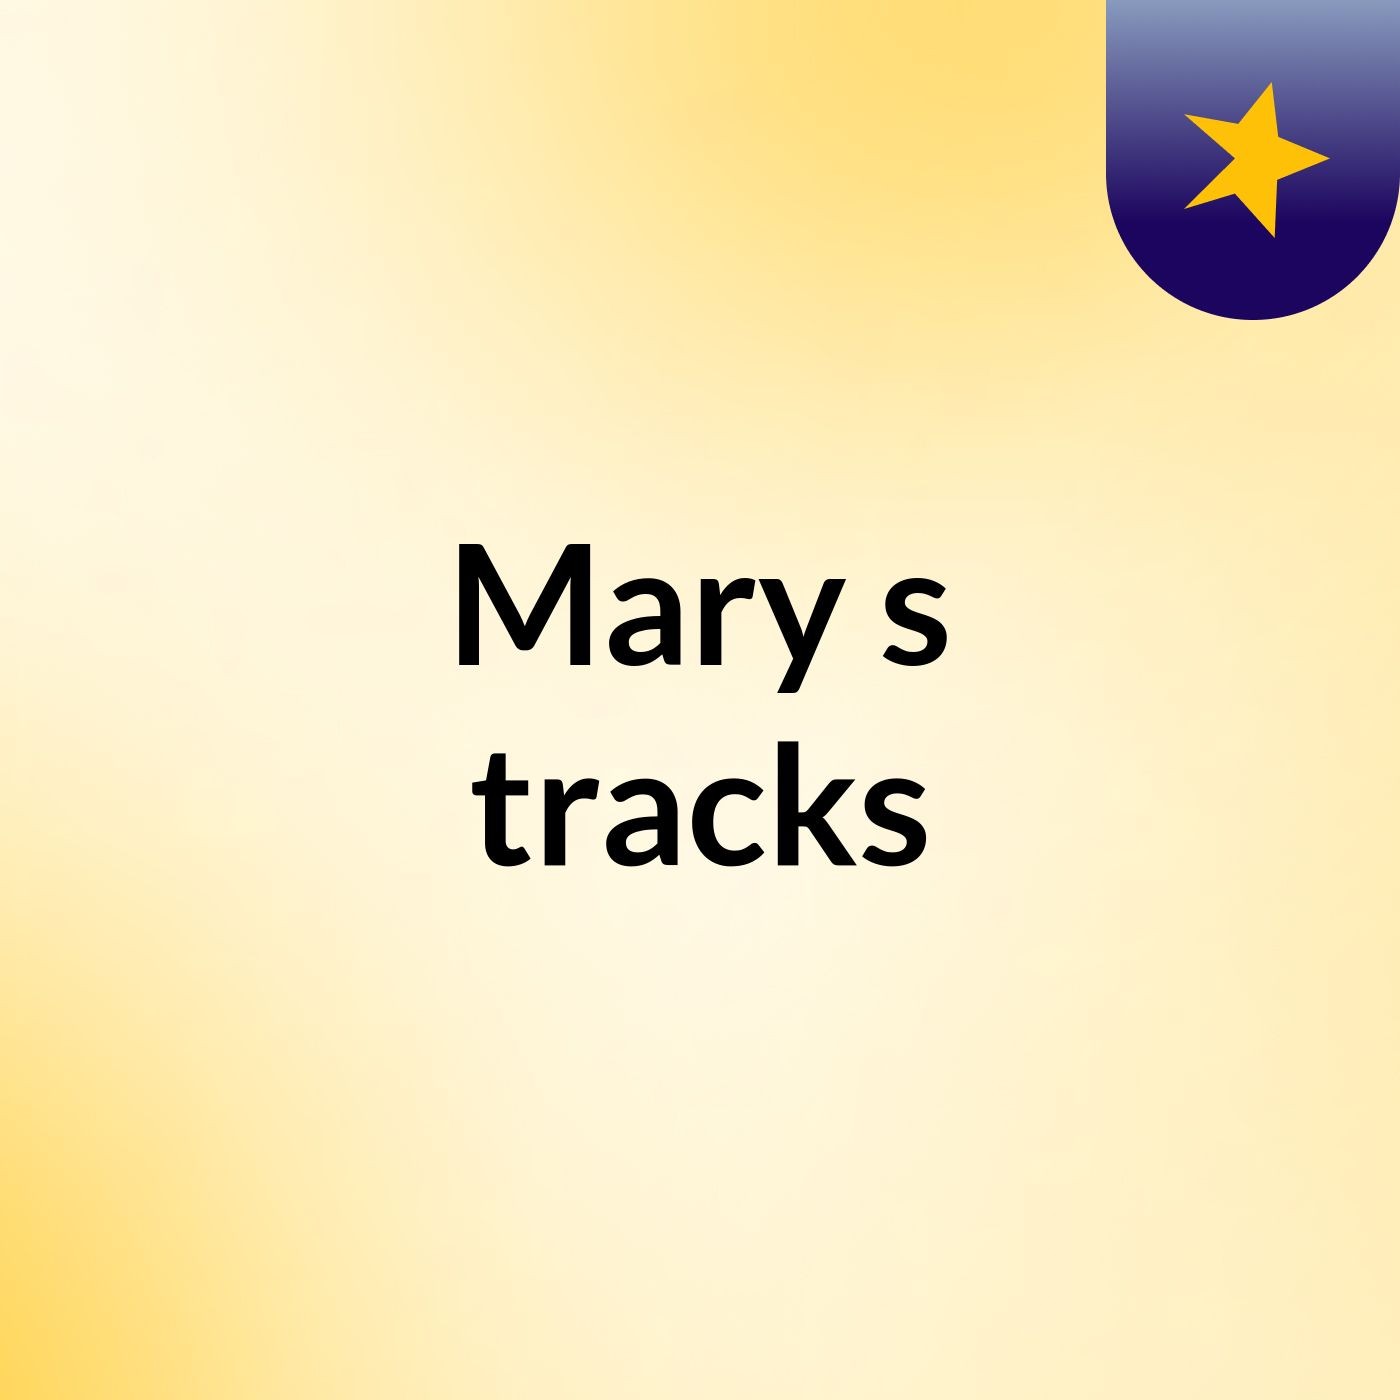 Mary's tracks